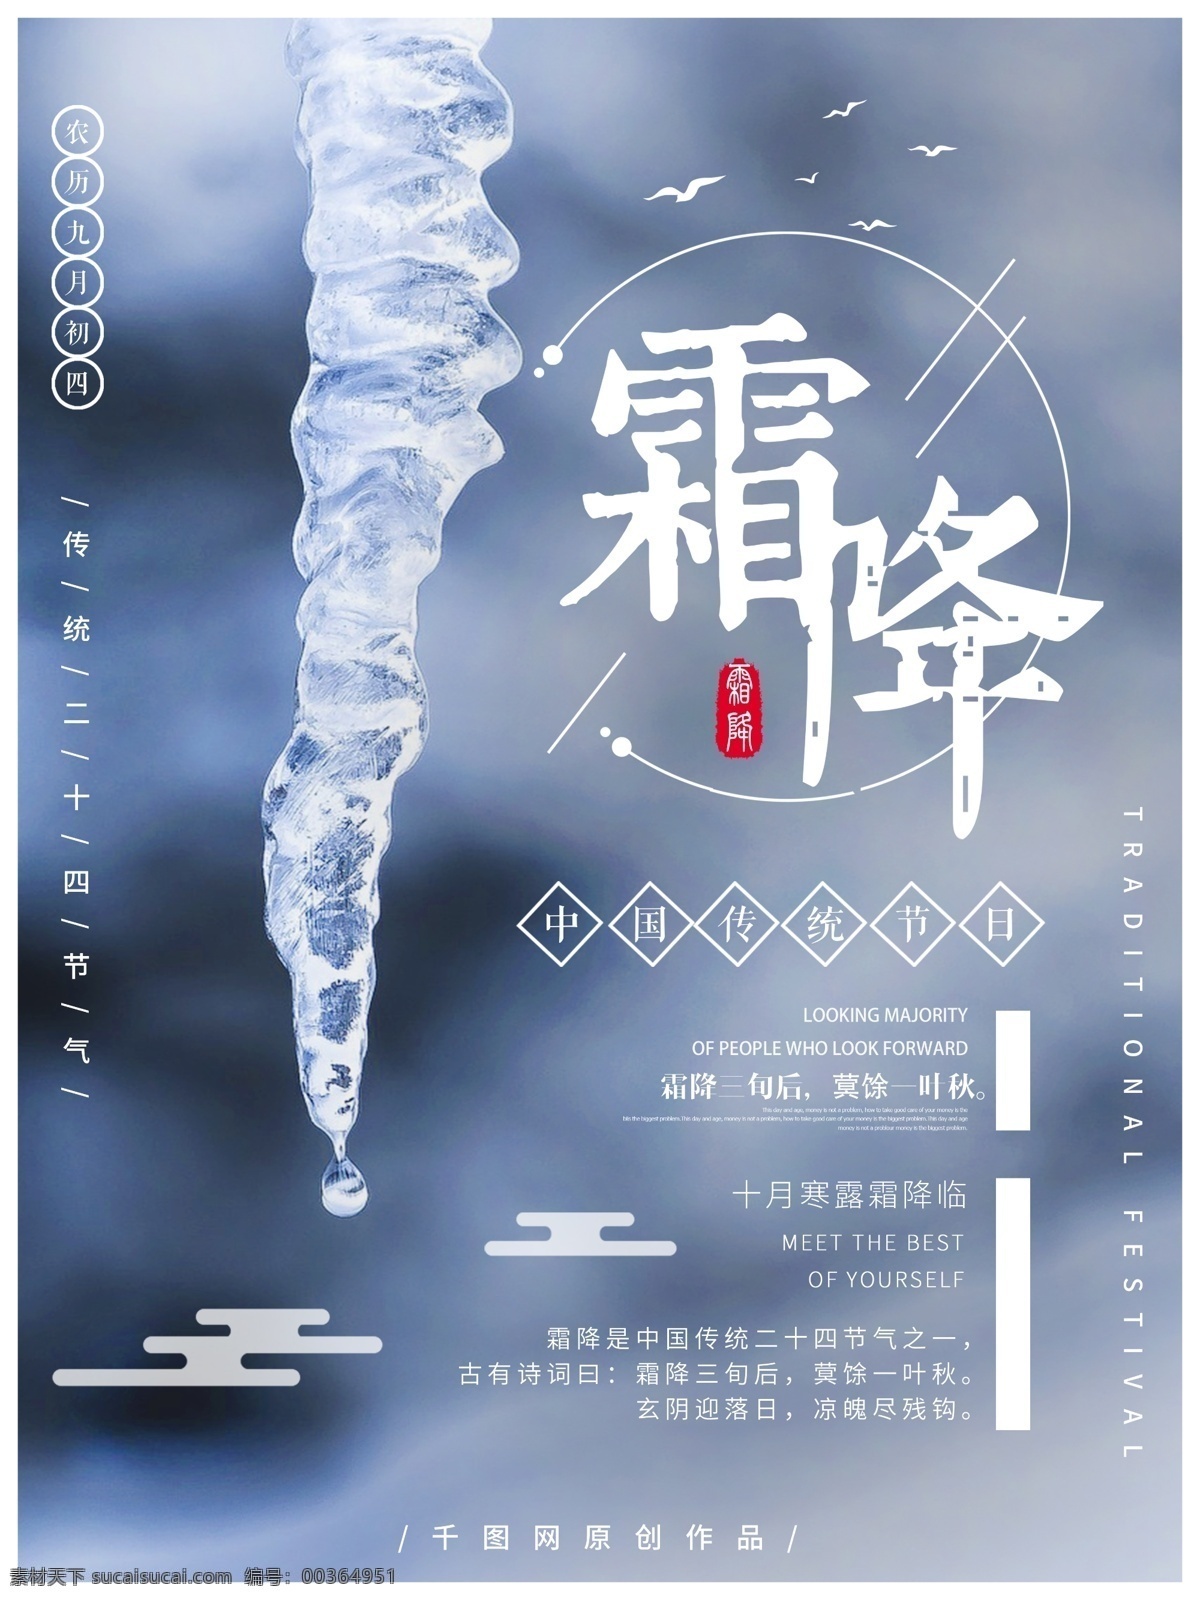 二十四节气 霜降 简约 风 海报 中国风 冬天 冰 传统节日 节气